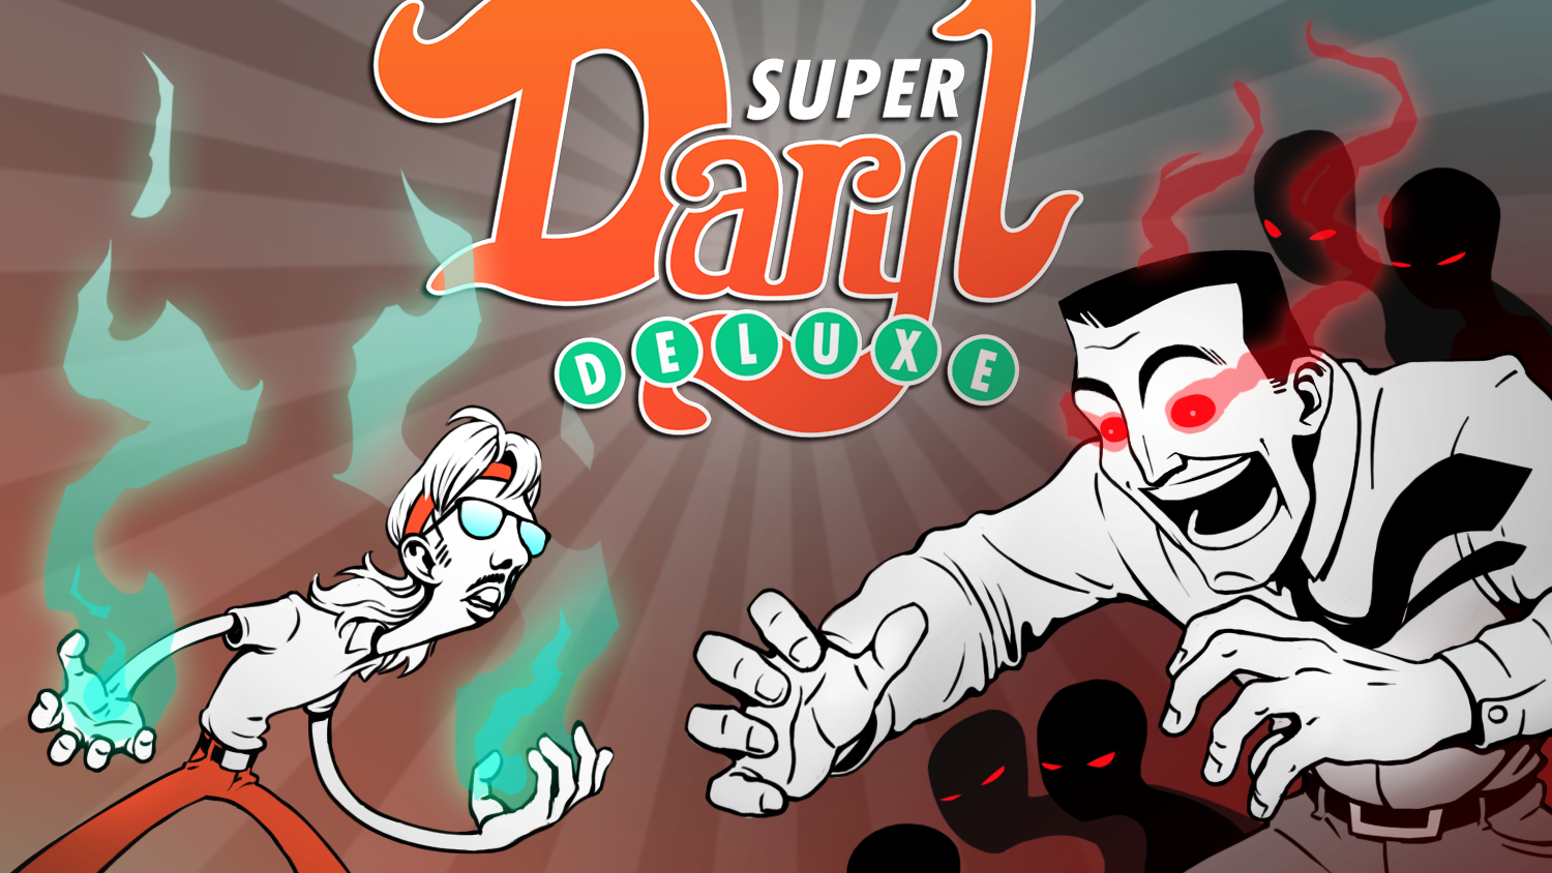 Super Daryl Deluxe estará disponible para PS4 el 10 de abril